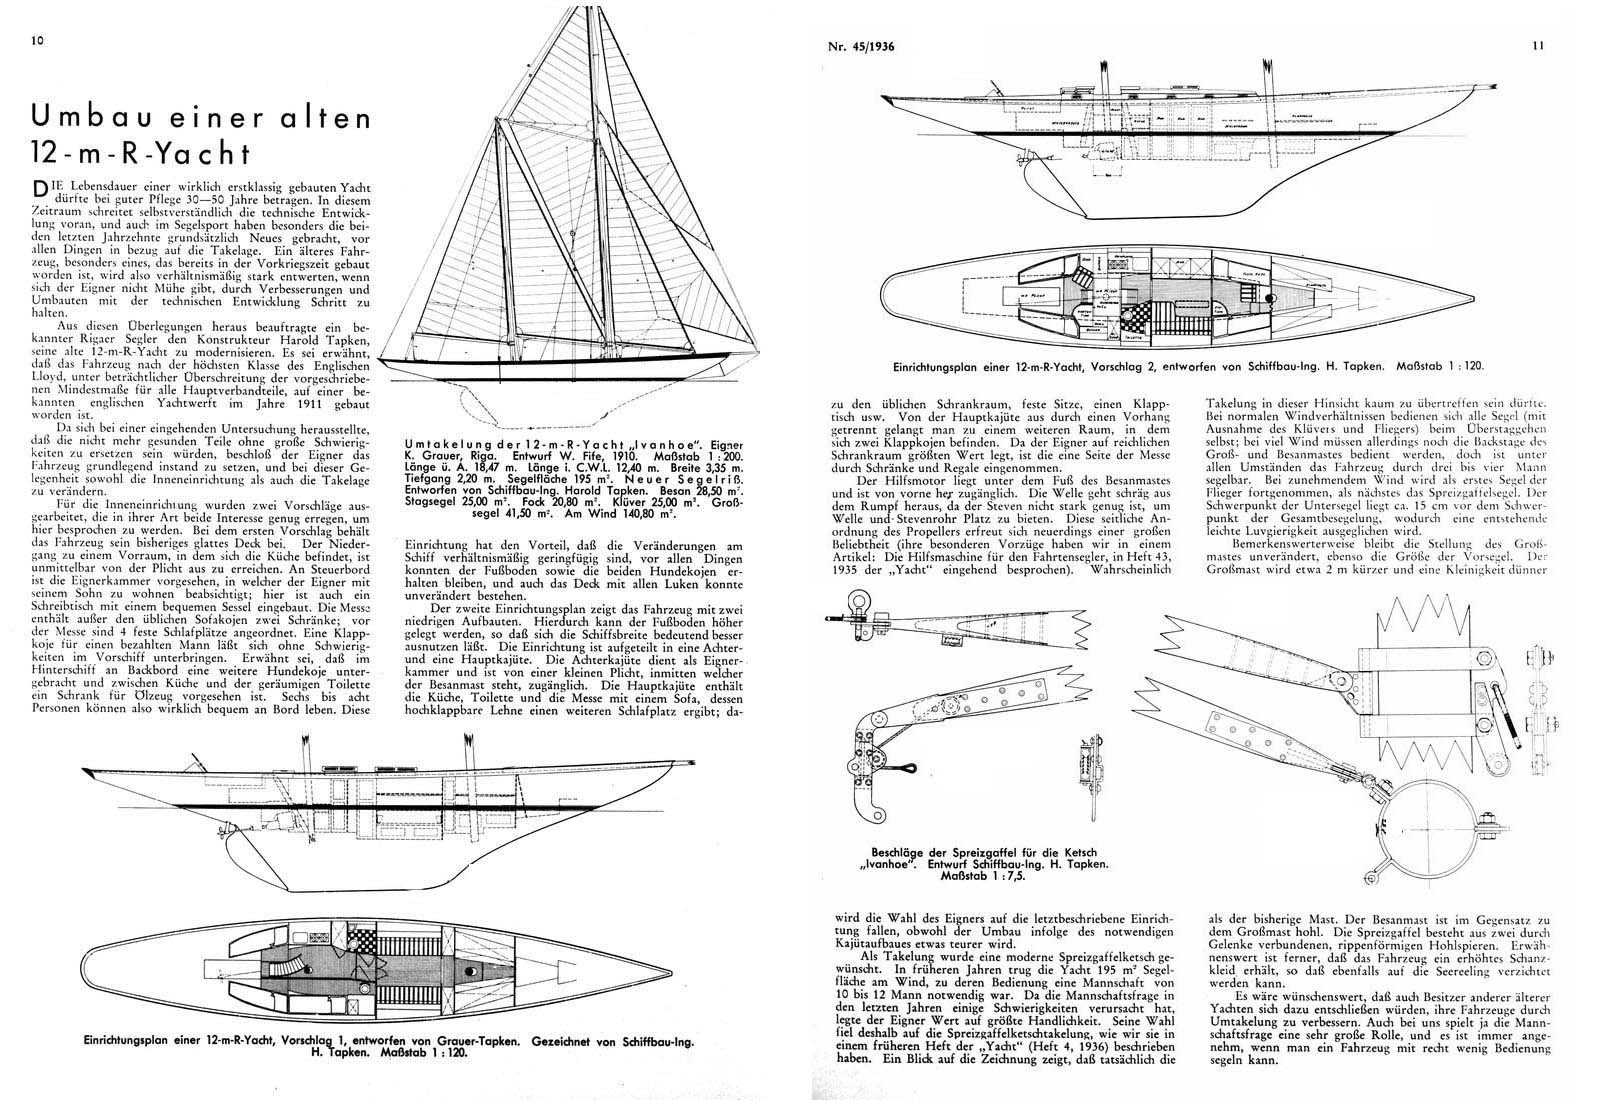 Get Gaff cutter sailboat plans | David Chan